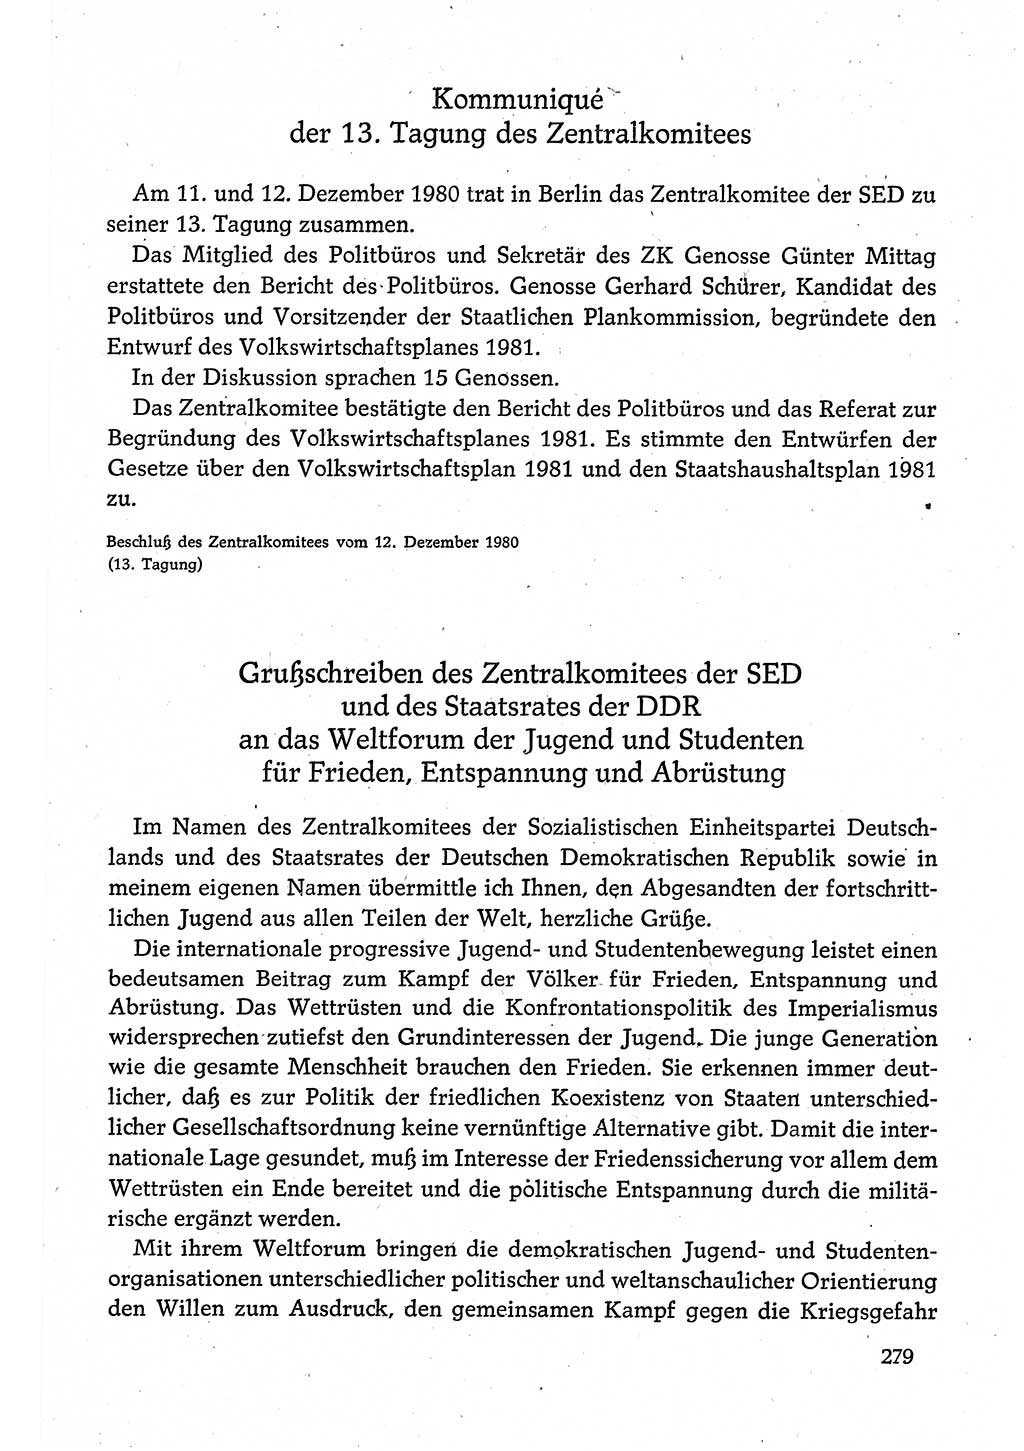 Dokumente der Sozialistischen Einheitspartei Deutschlands (SED) [Deutsche Demokratische Republik (DDR)] 1980-1981, Seite 279 (Dok. SED DDR 1980-1981, S. 279)